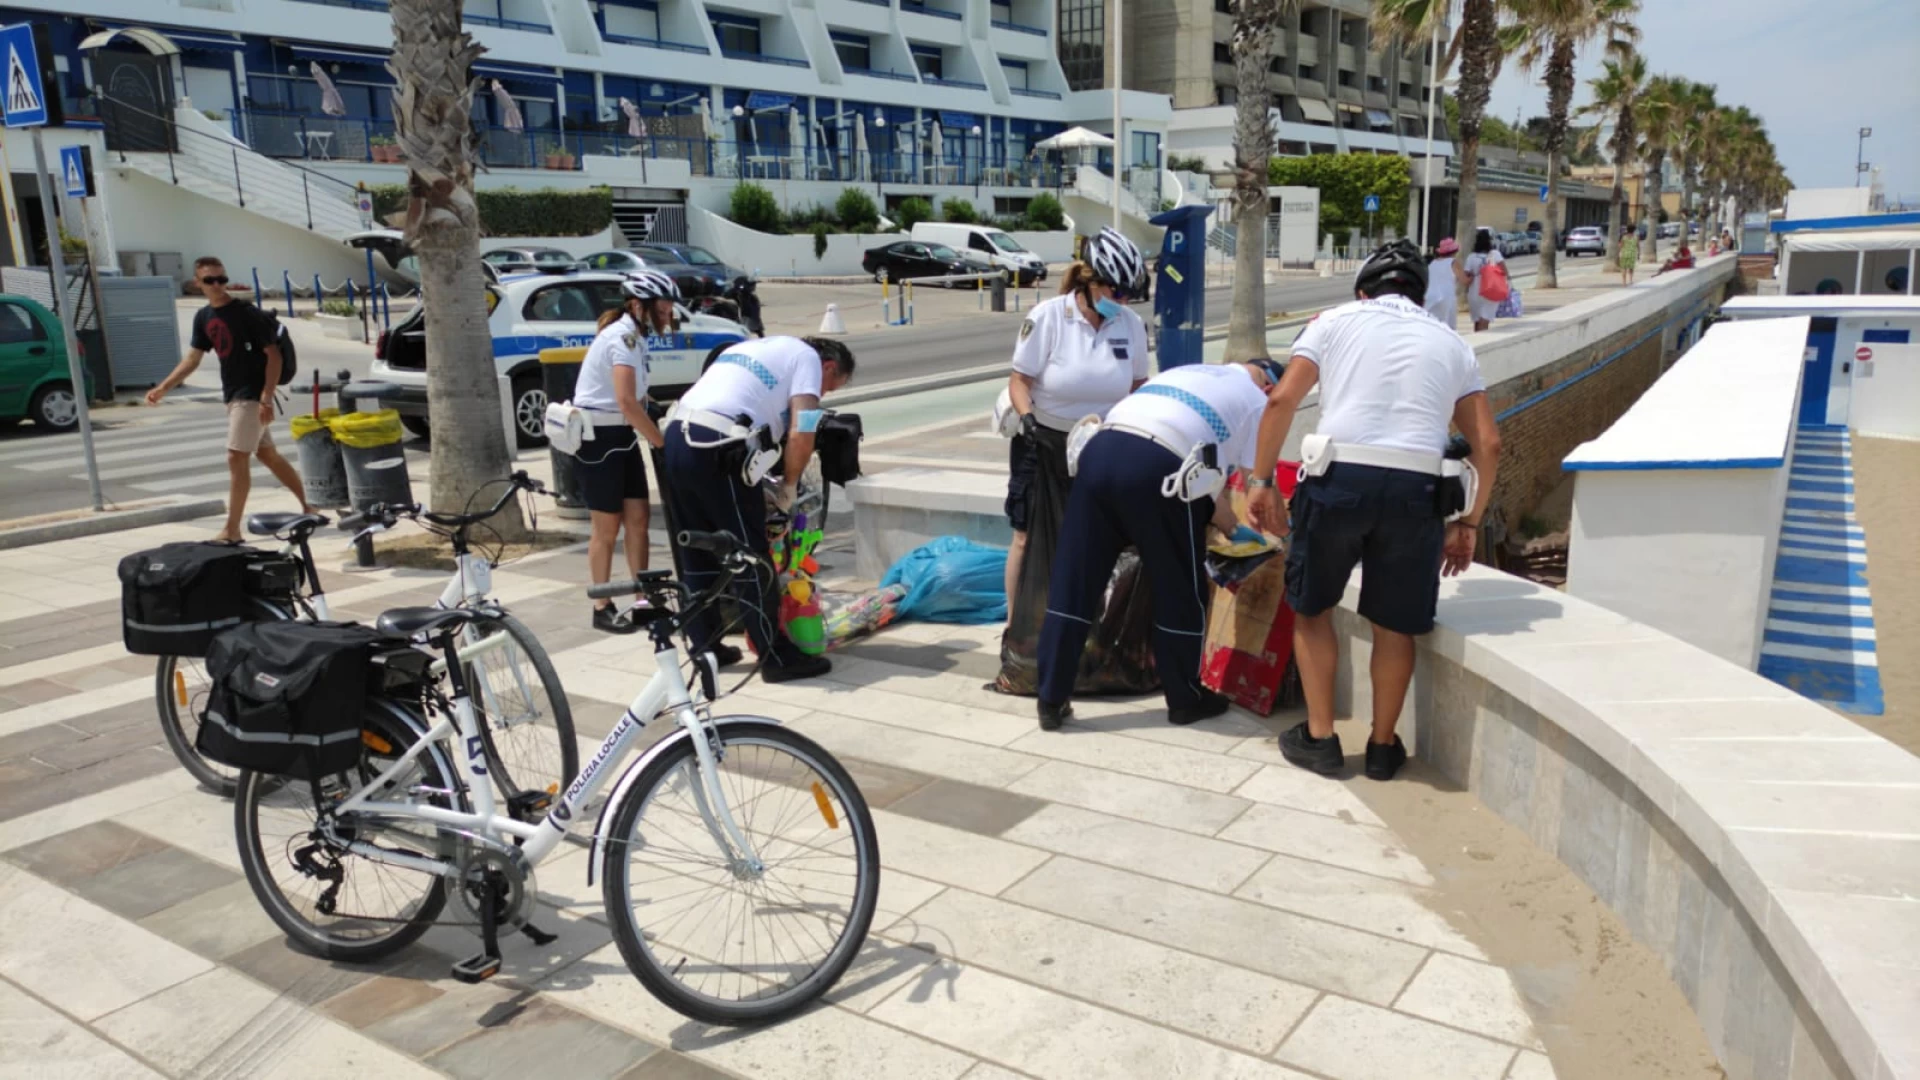 Termoli: la Polizia locale intensifica i controlli sulle spiagge. Sequestrata merce contraffatta di ogni tipo.